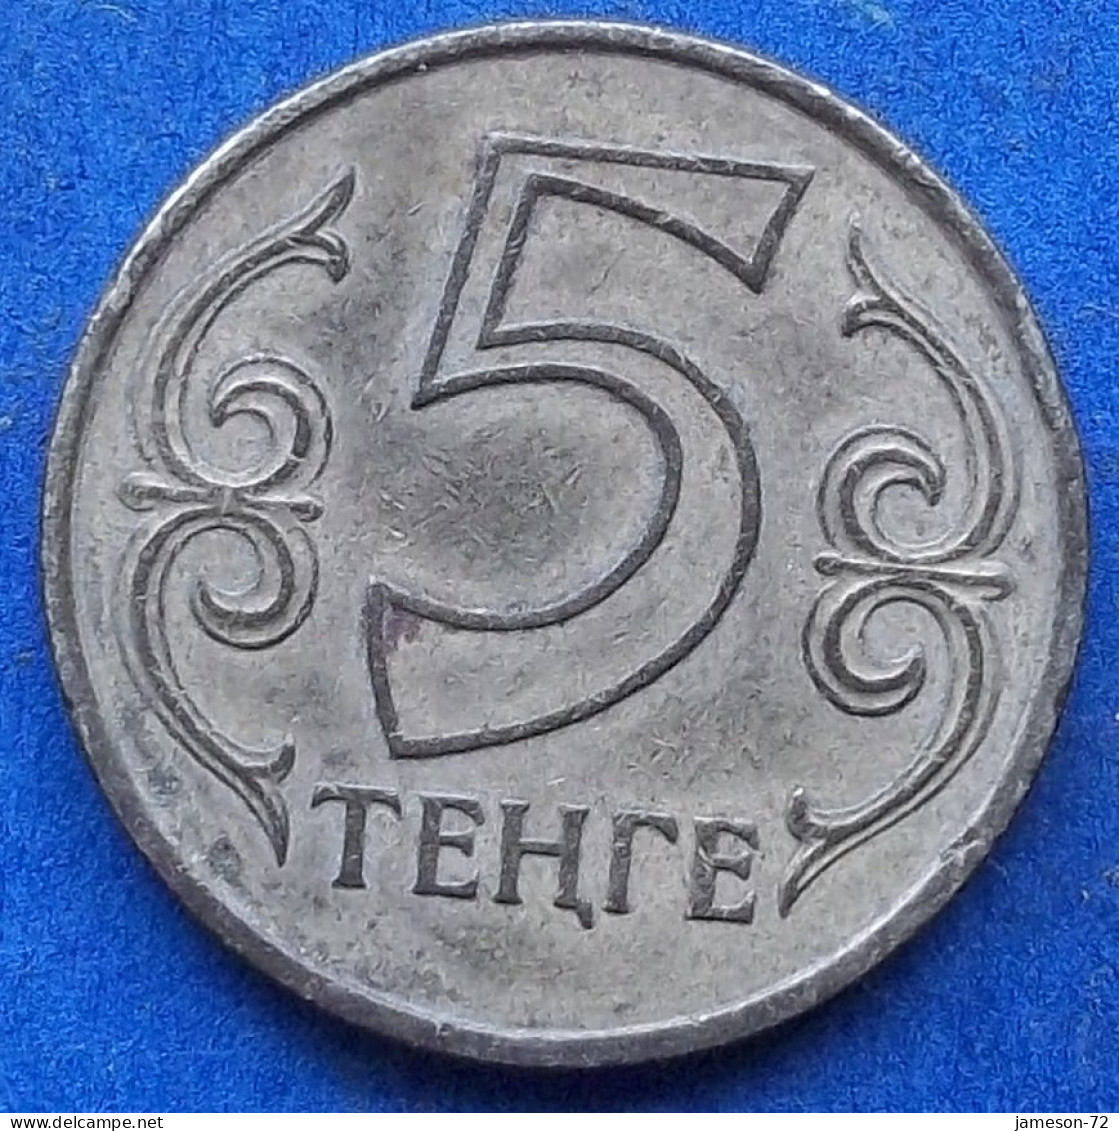 KAZAKHSTAN - 5 Tenge 2004 KM# 24 Independent Republic (1991) - Edelweiss Coins - Kasachstan